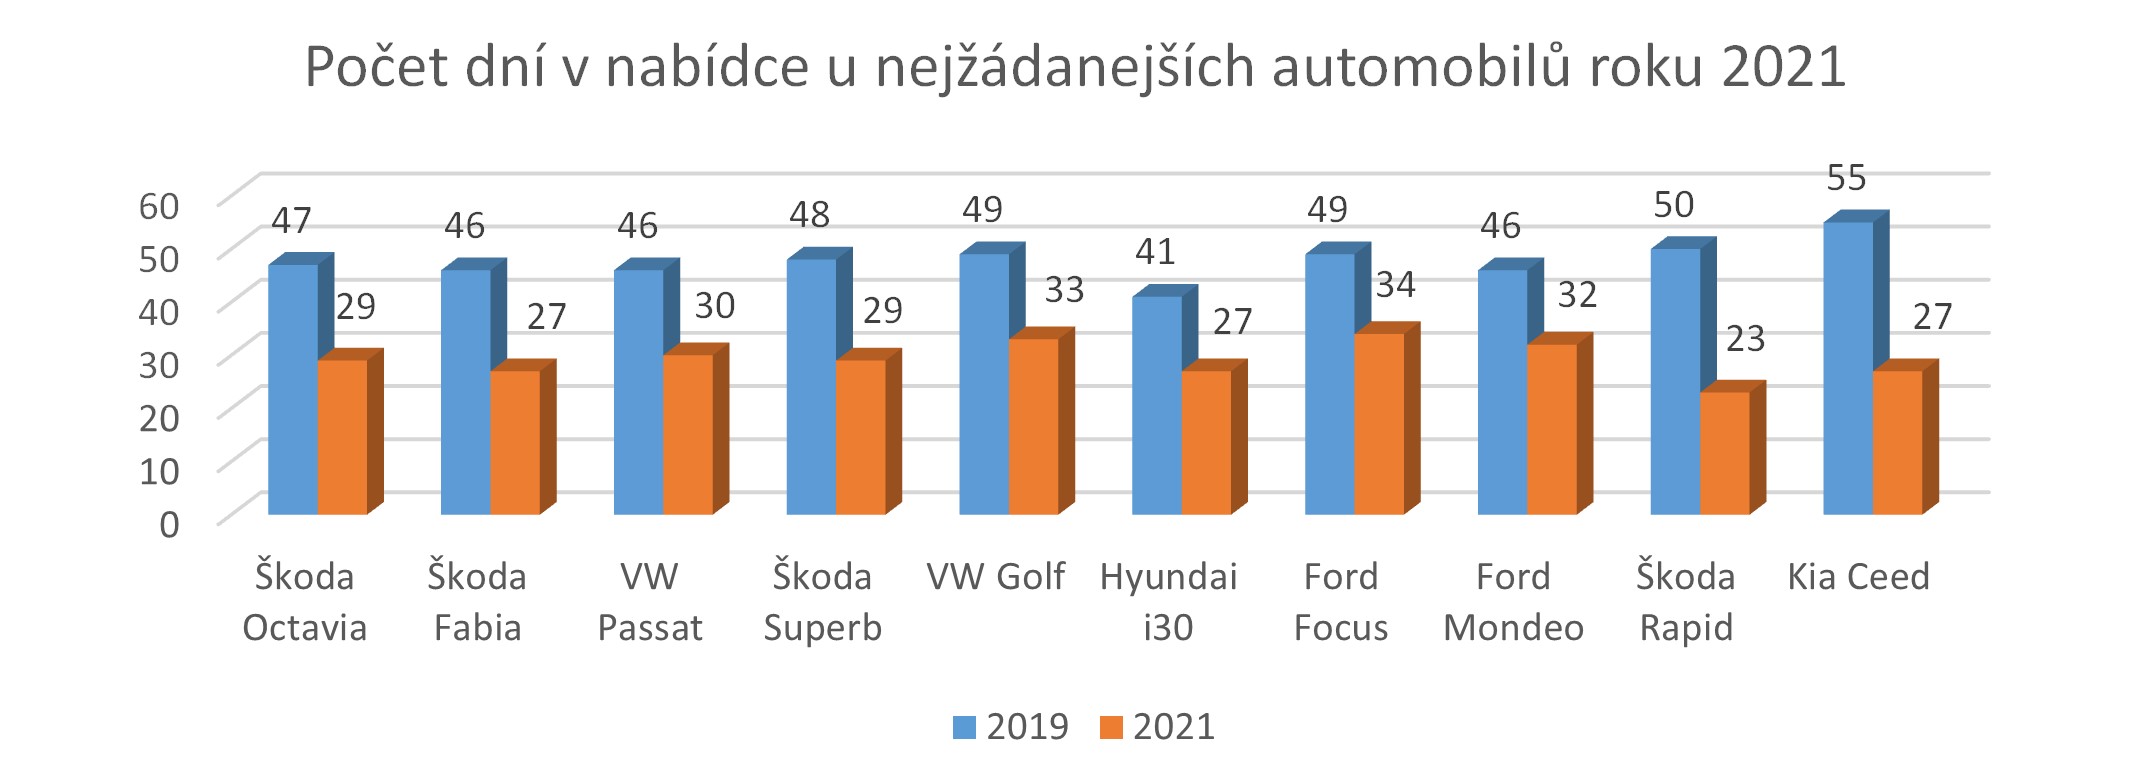 TOP 10 nejžádanějších modelů automobilů a jejich průměrná délka v nabídce na českém trhu v letech 2019 a 2021